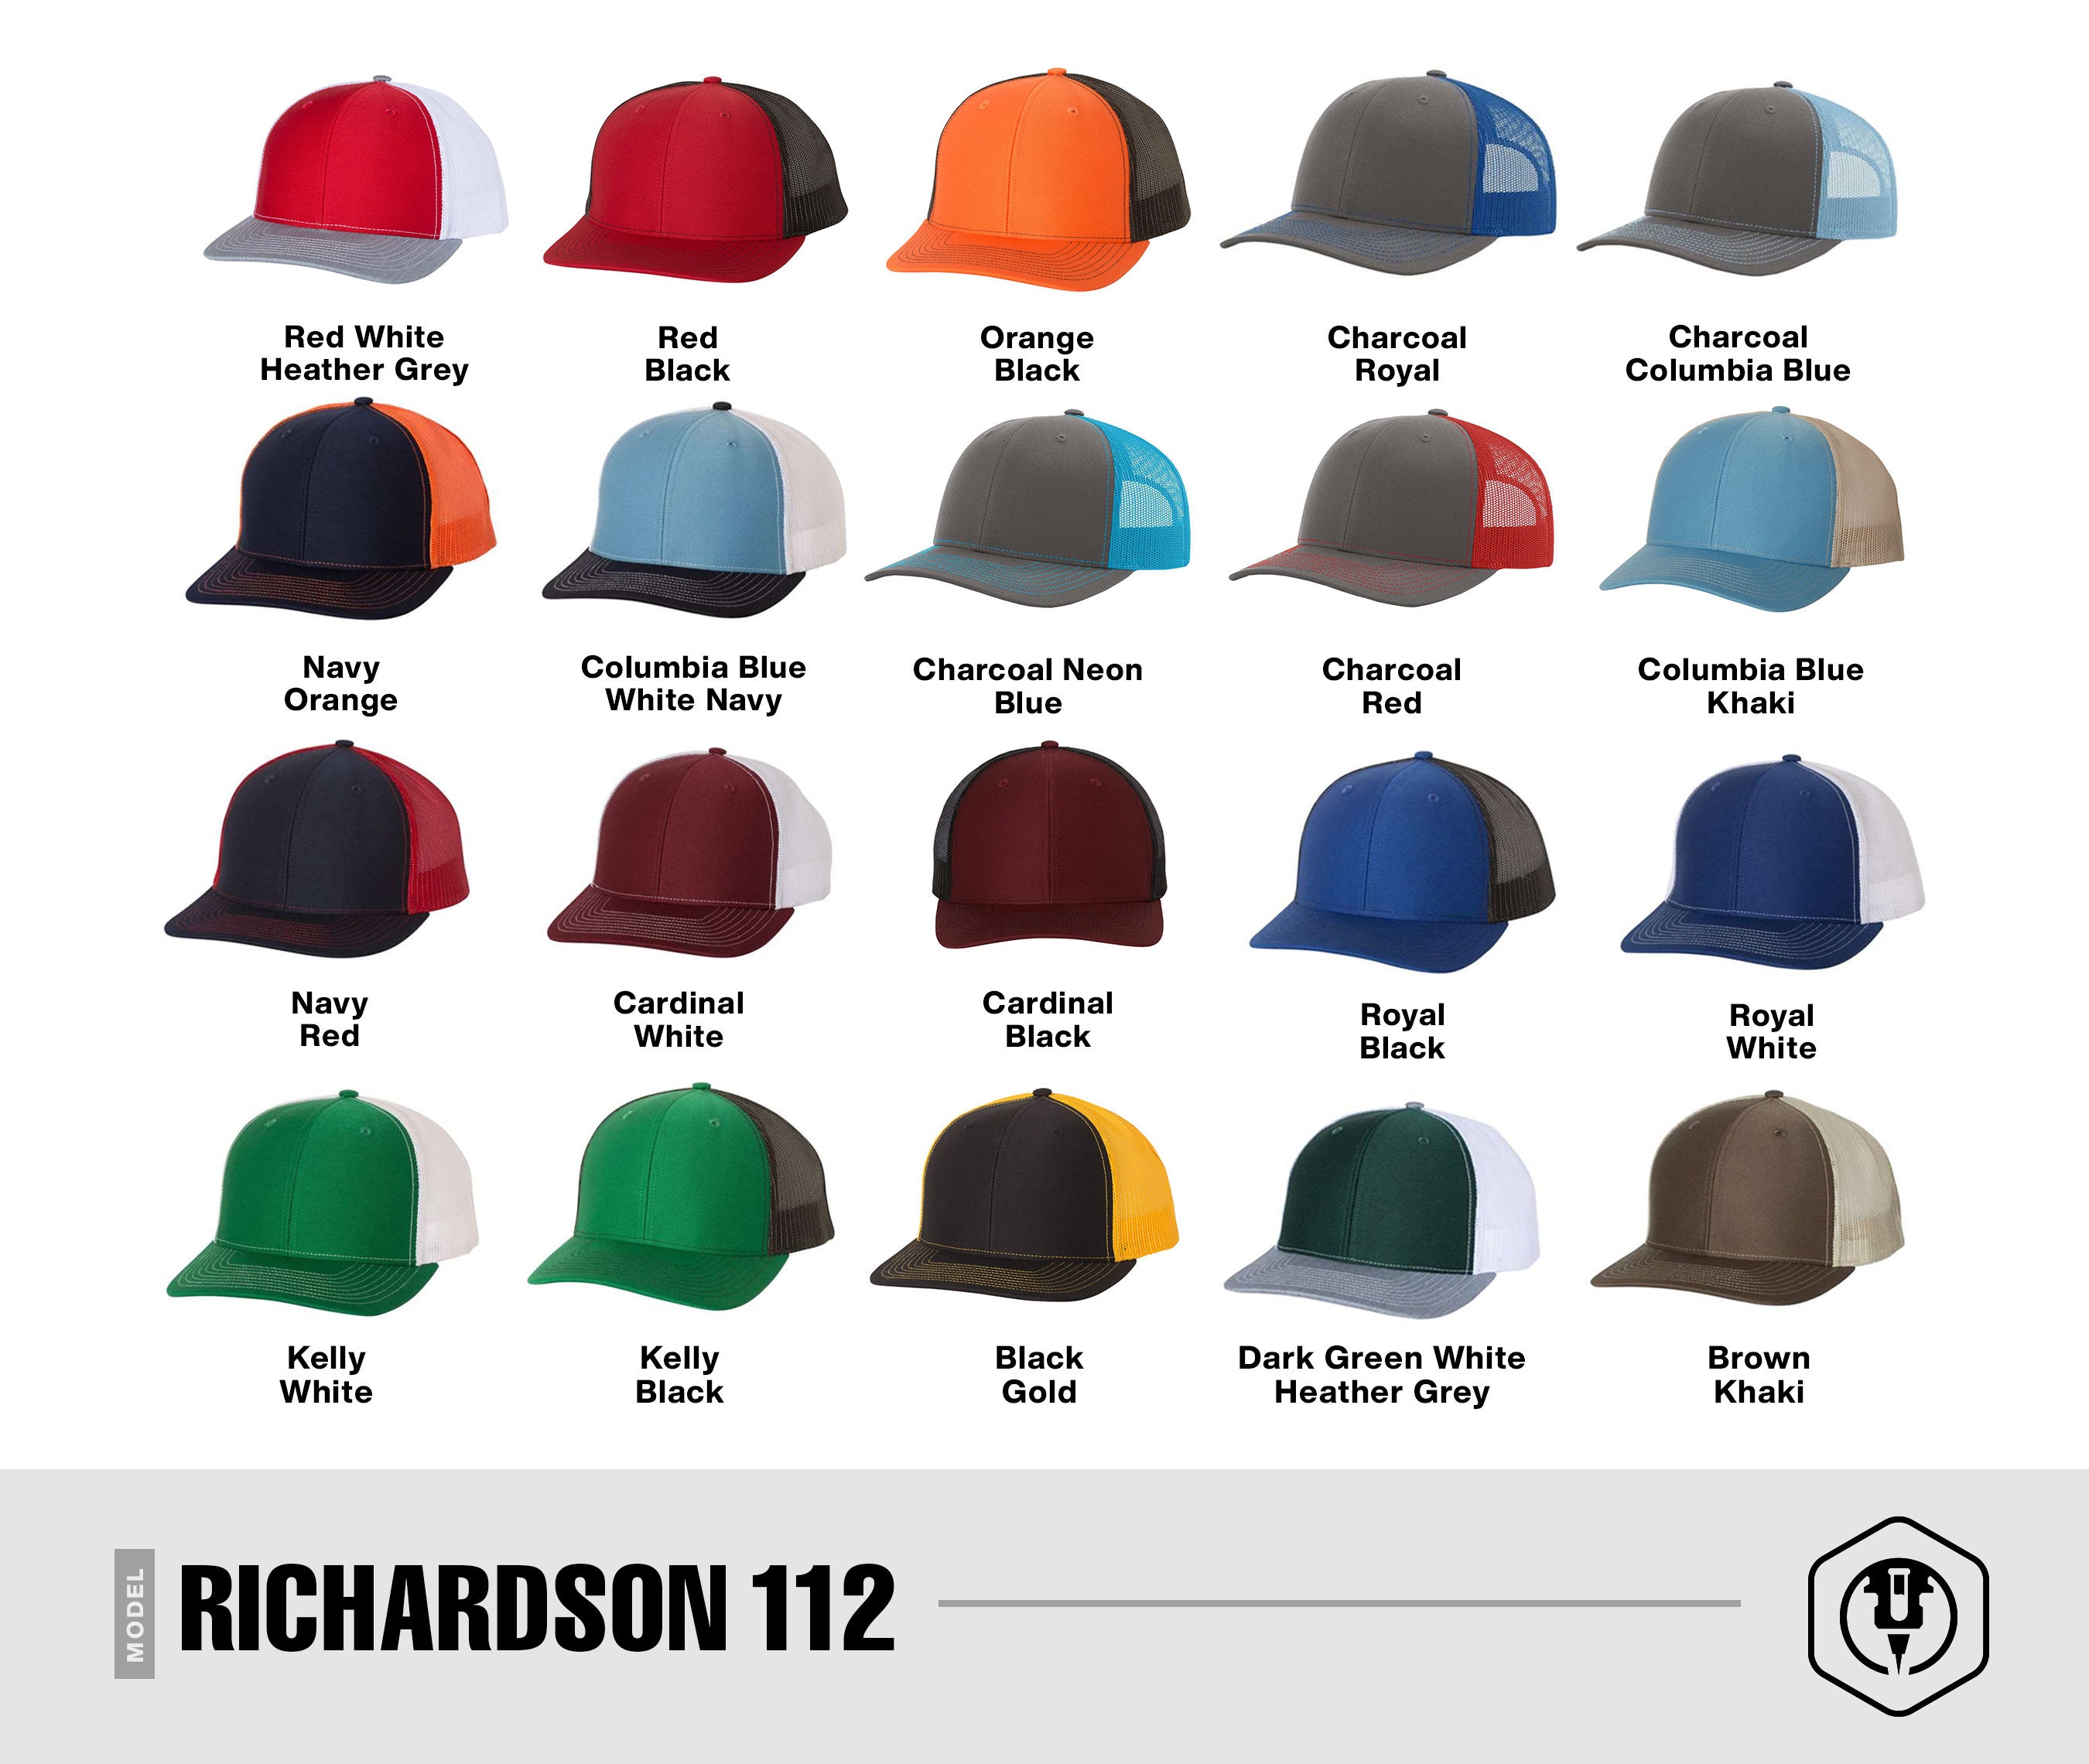 Custom tooled hats – Vig's leather